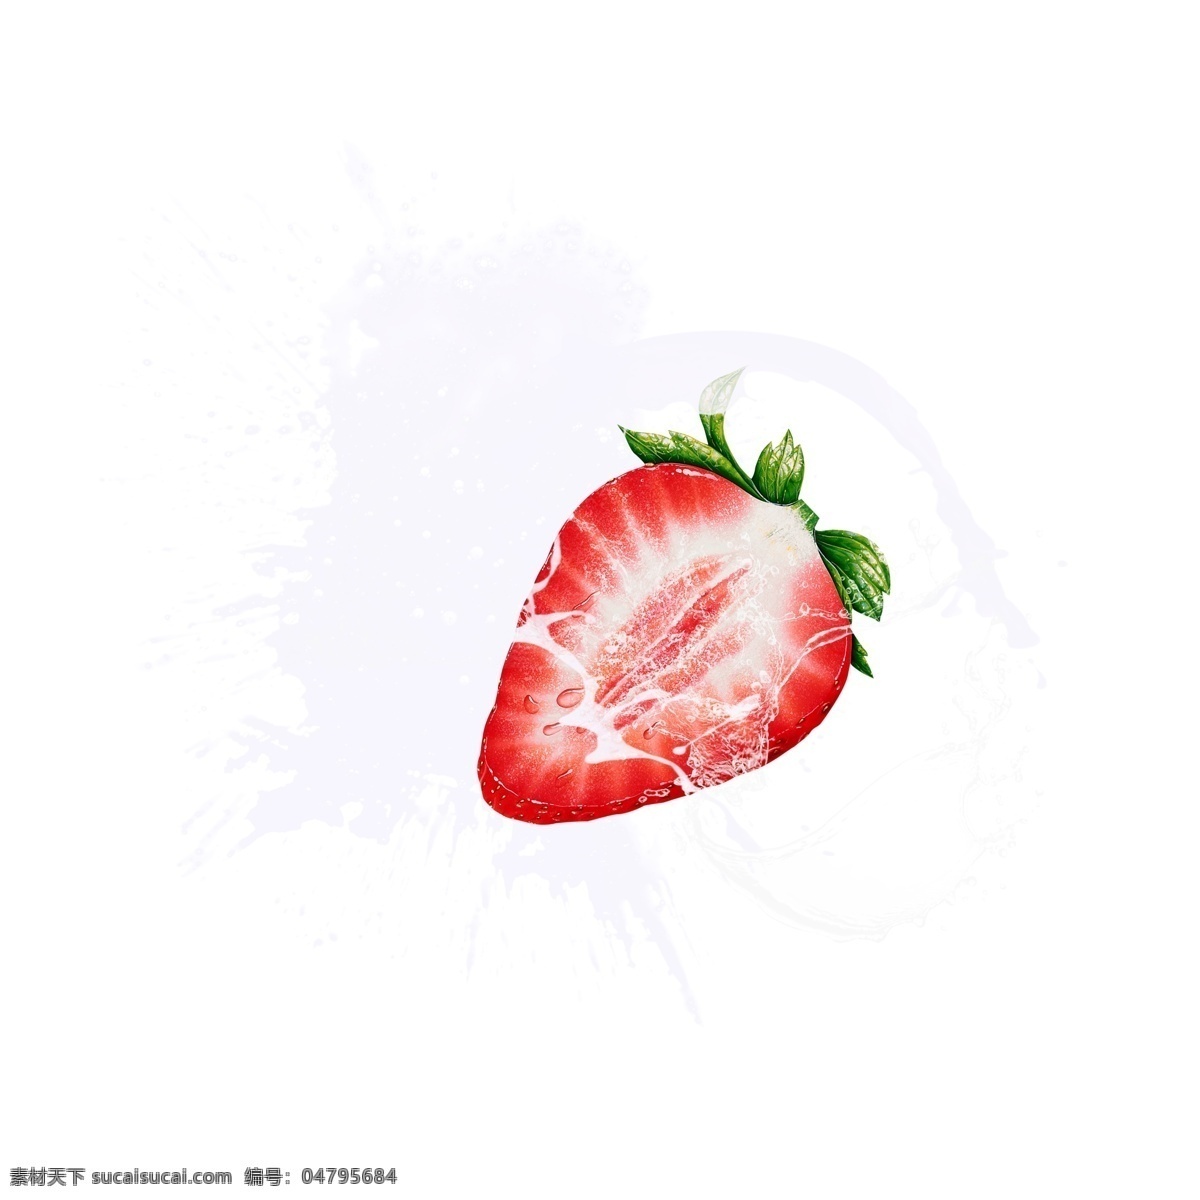 创意 冰块 蔬果 草莓 组合 元素 冰 不规则图形 绿色树叶 几何冰晶 蓝色冰块 几何冰晶冰块